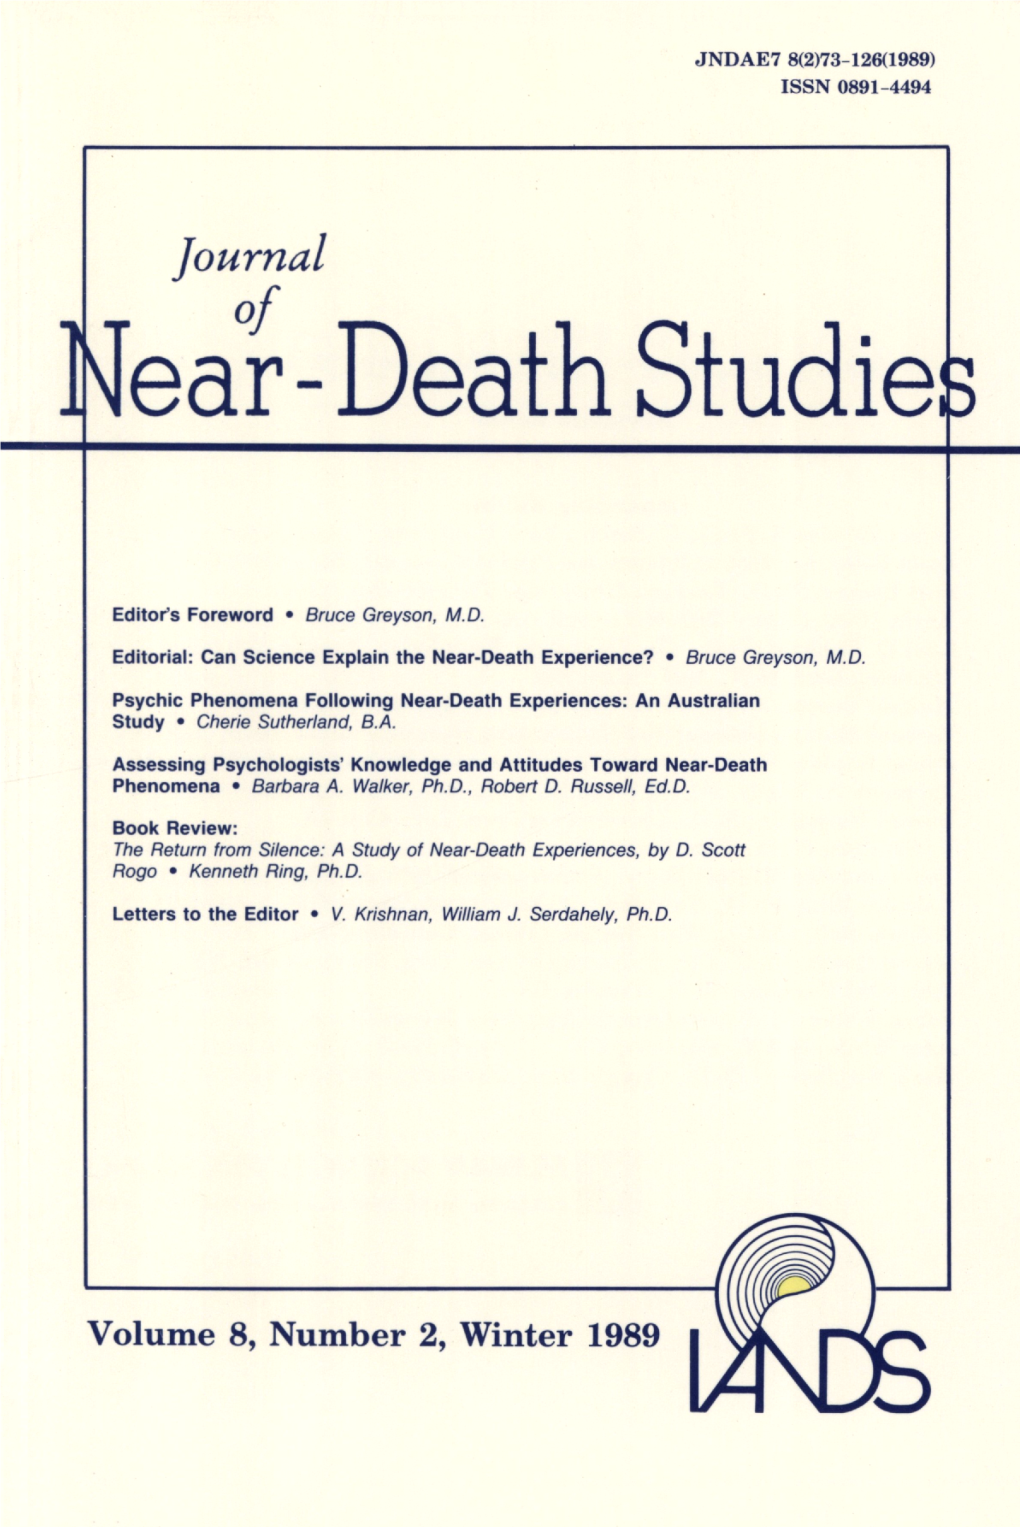 Near-Death Studie